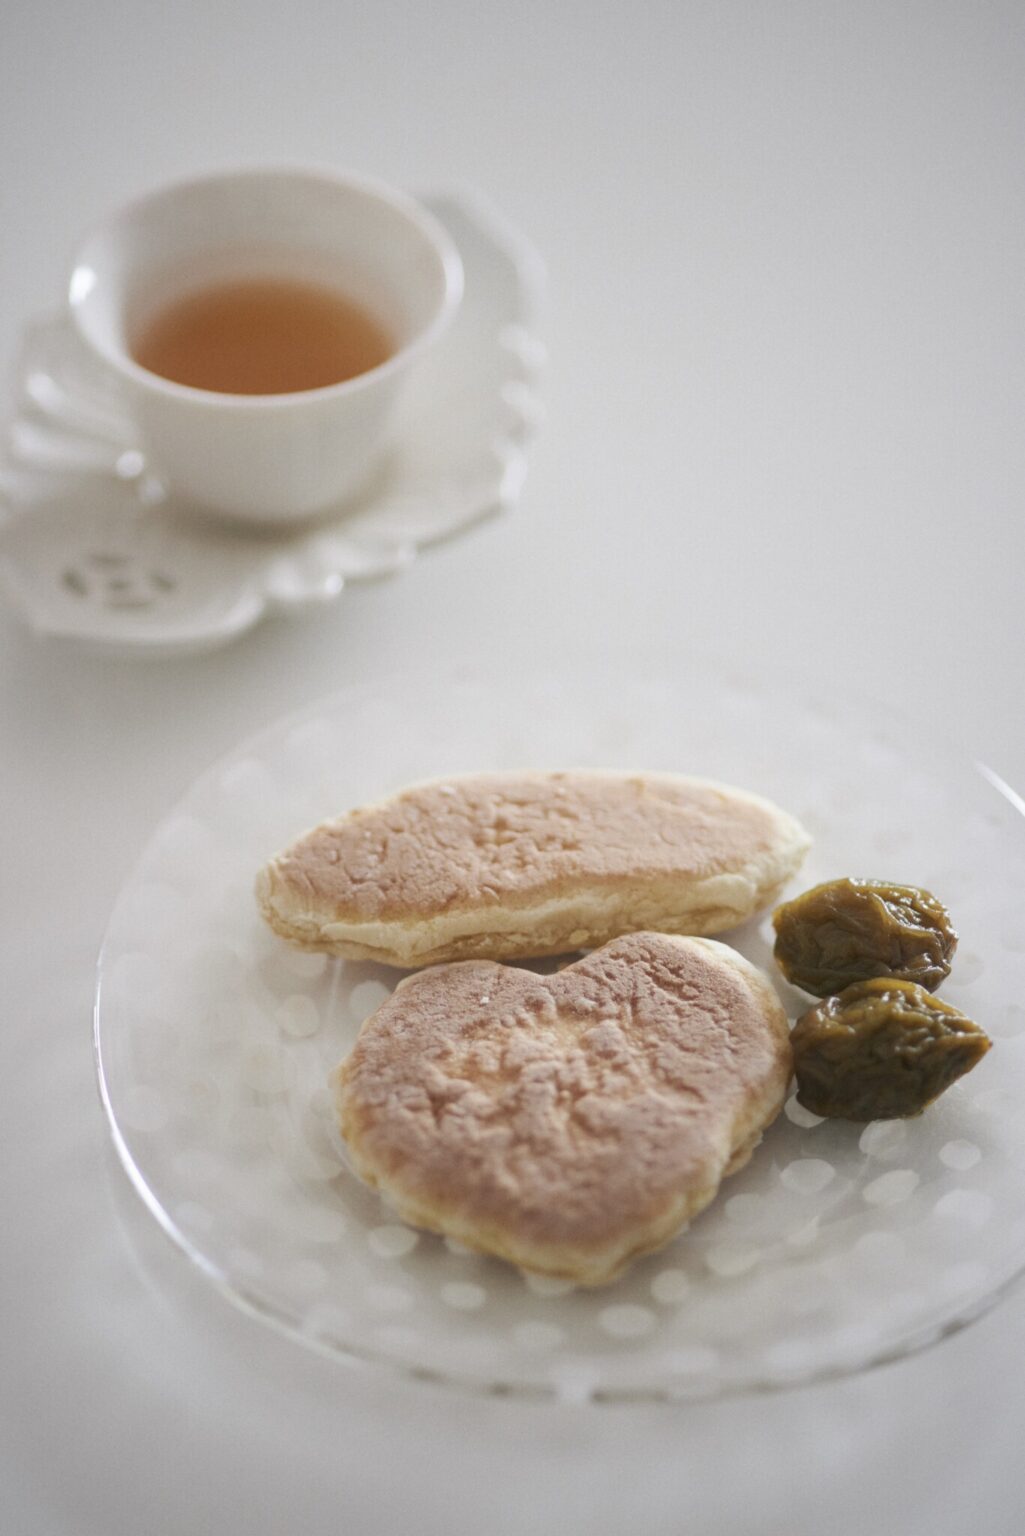 竹川菓子店の甘い小麦粉せんべい「紅梅」は、90代のおばあちゃんが毎朝焼く。富士さんお手製の梅のシロップ漬けとともに。